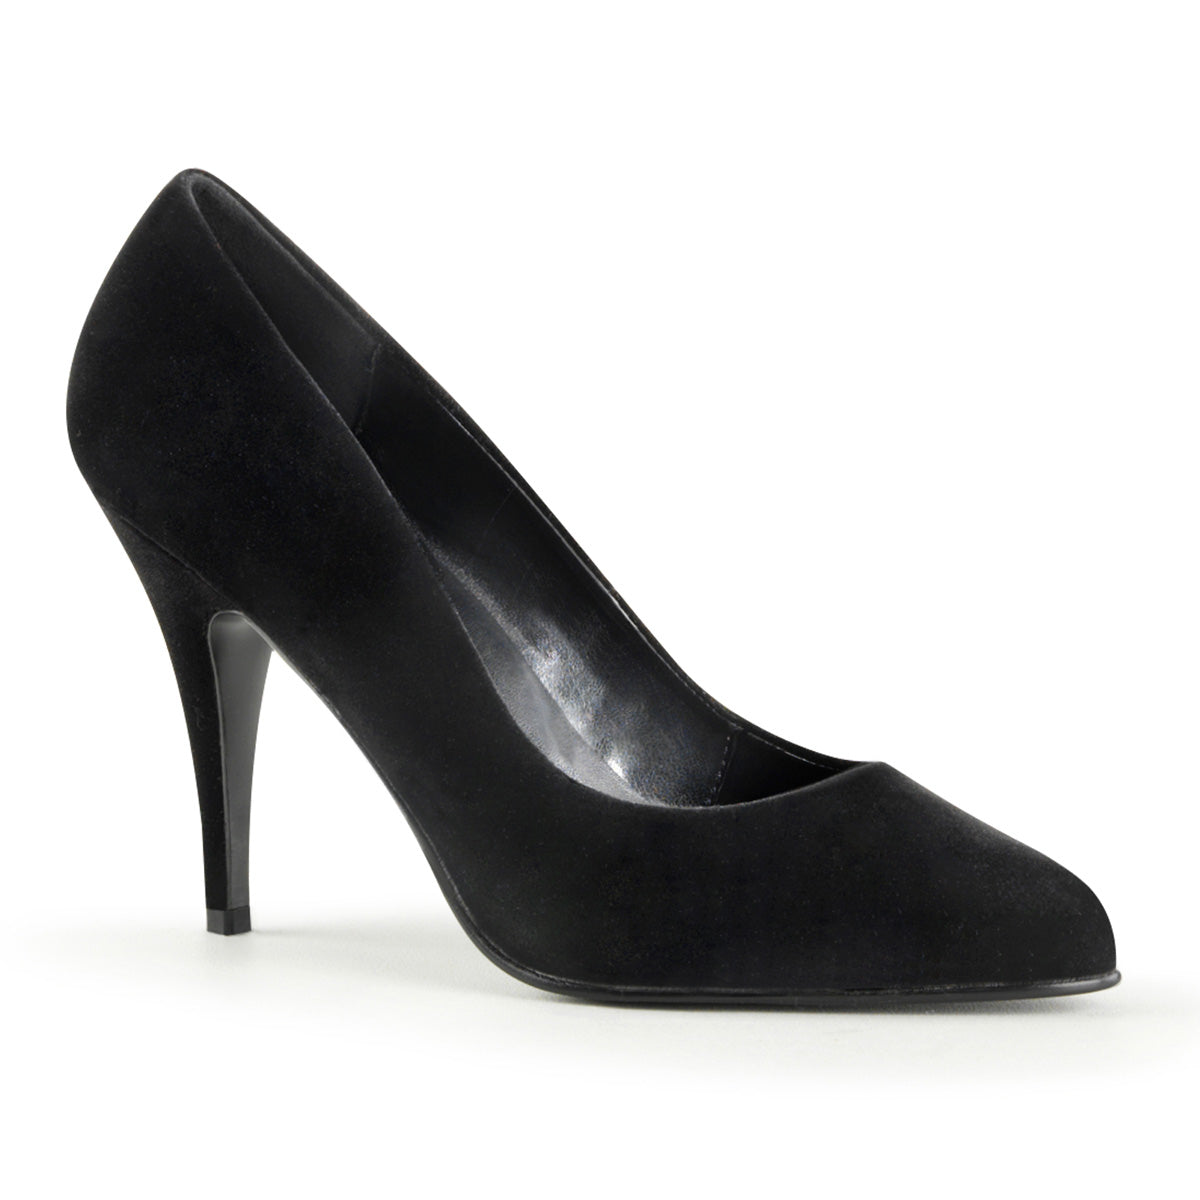 VANITY-420 Pleaser Shoe 4" Heel Black Velvet Fetish Footwear